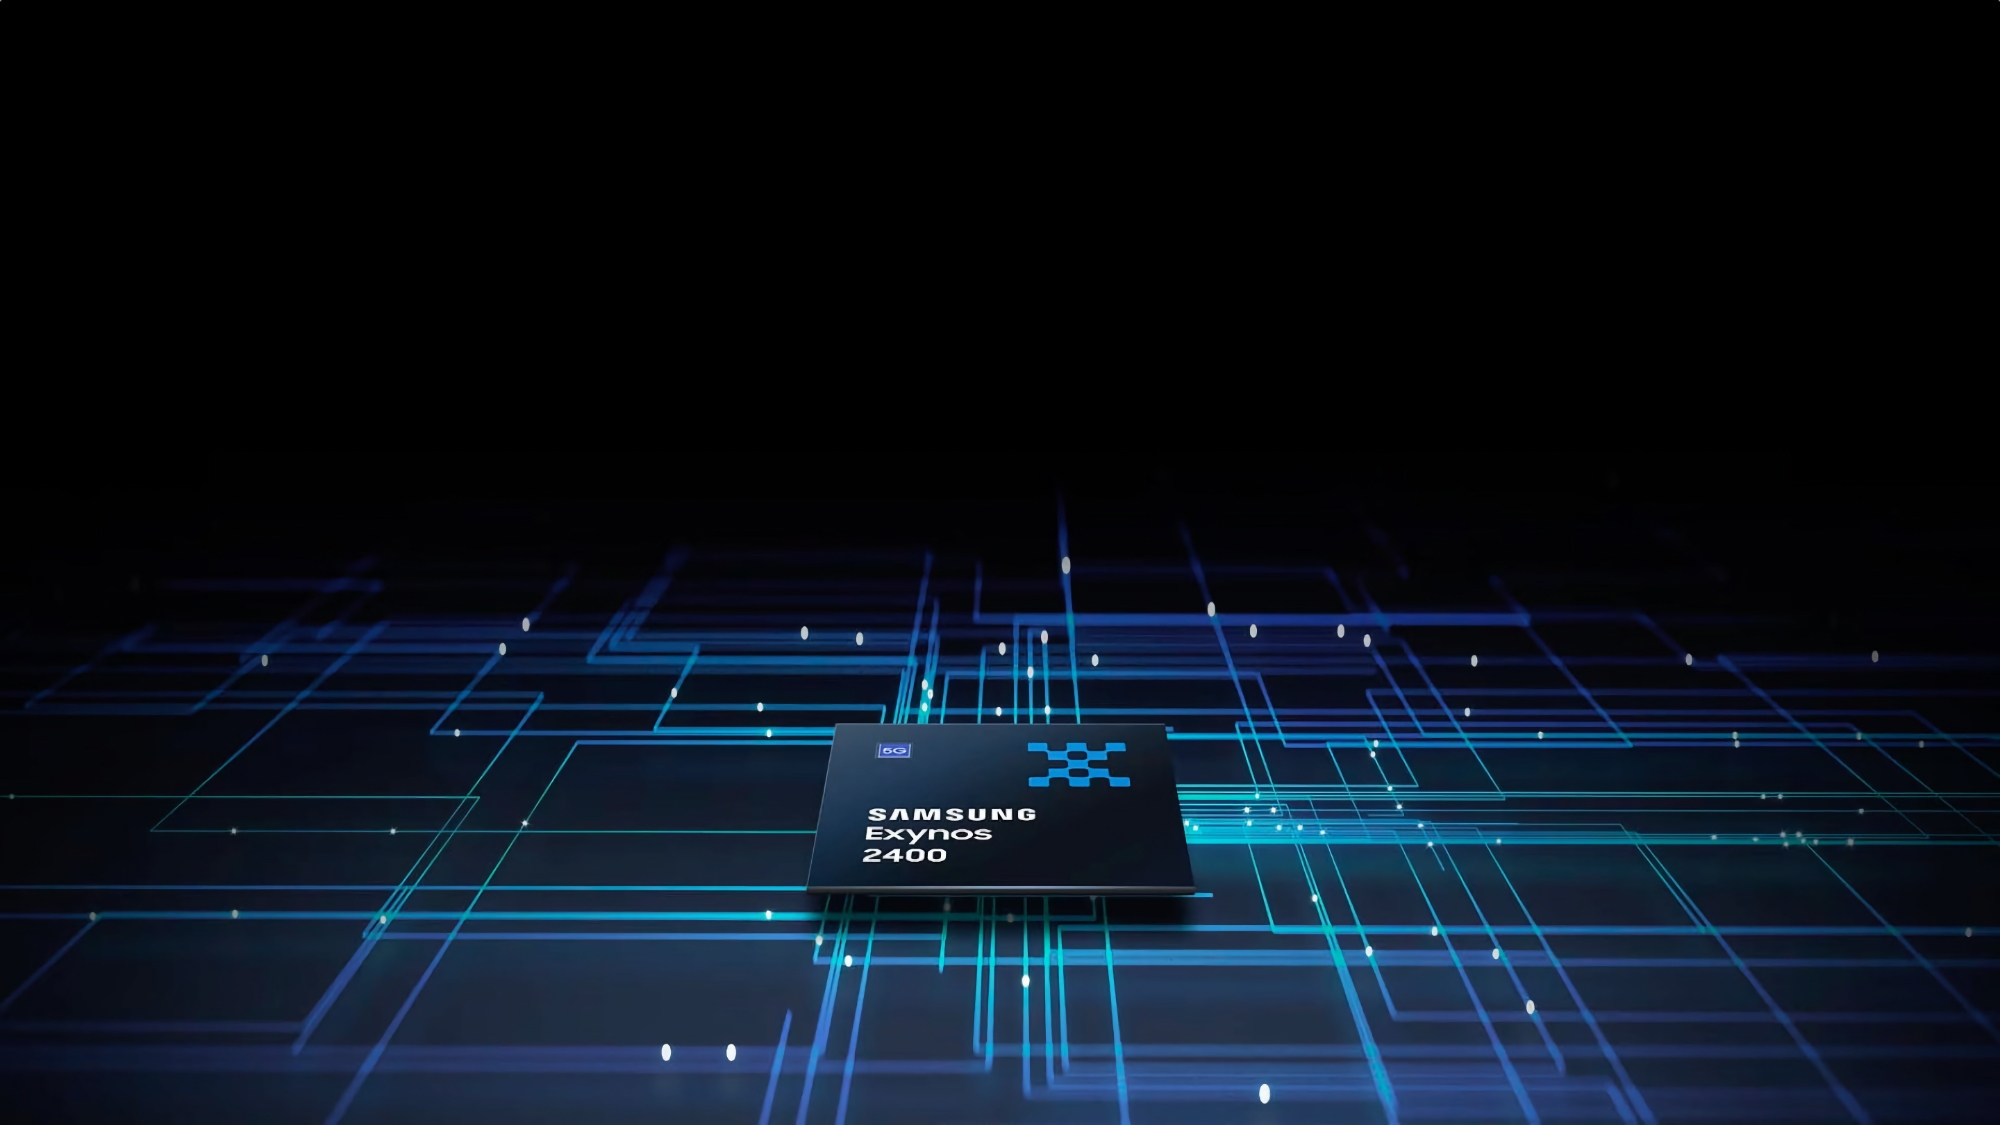 10 núcleos de CPU y gráficos Xclipse 940: Samsung ha revelado detalles sobre su chip insignia Exynos 2400